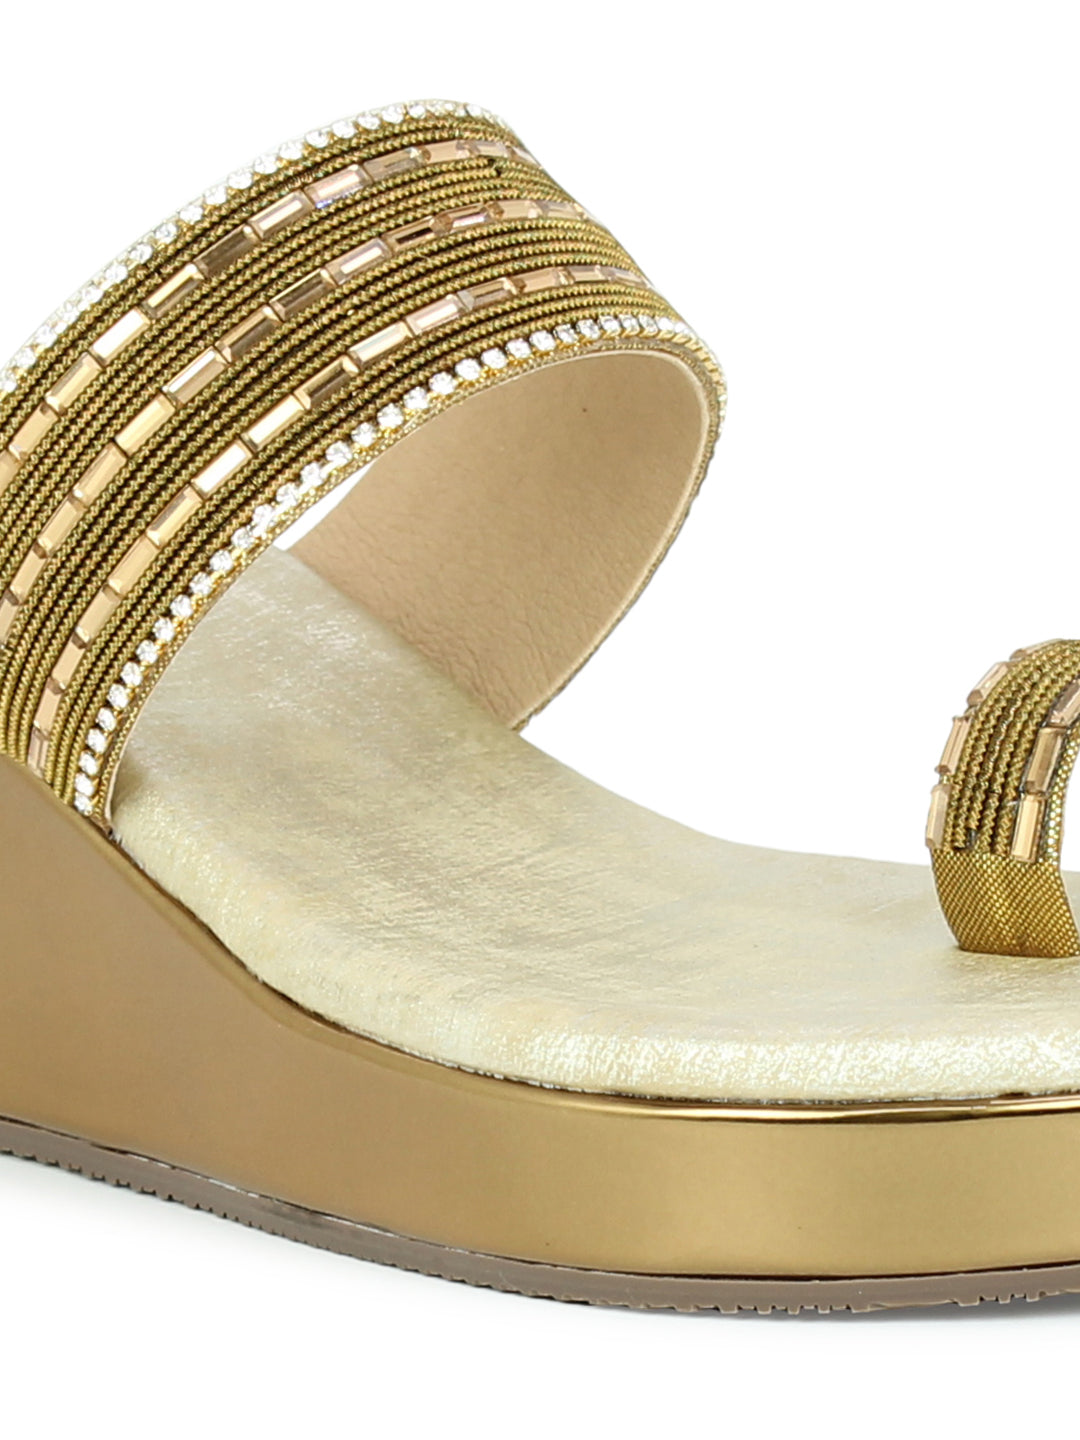 Women Ant Gold Ethnic Embellished One Toe Wedges